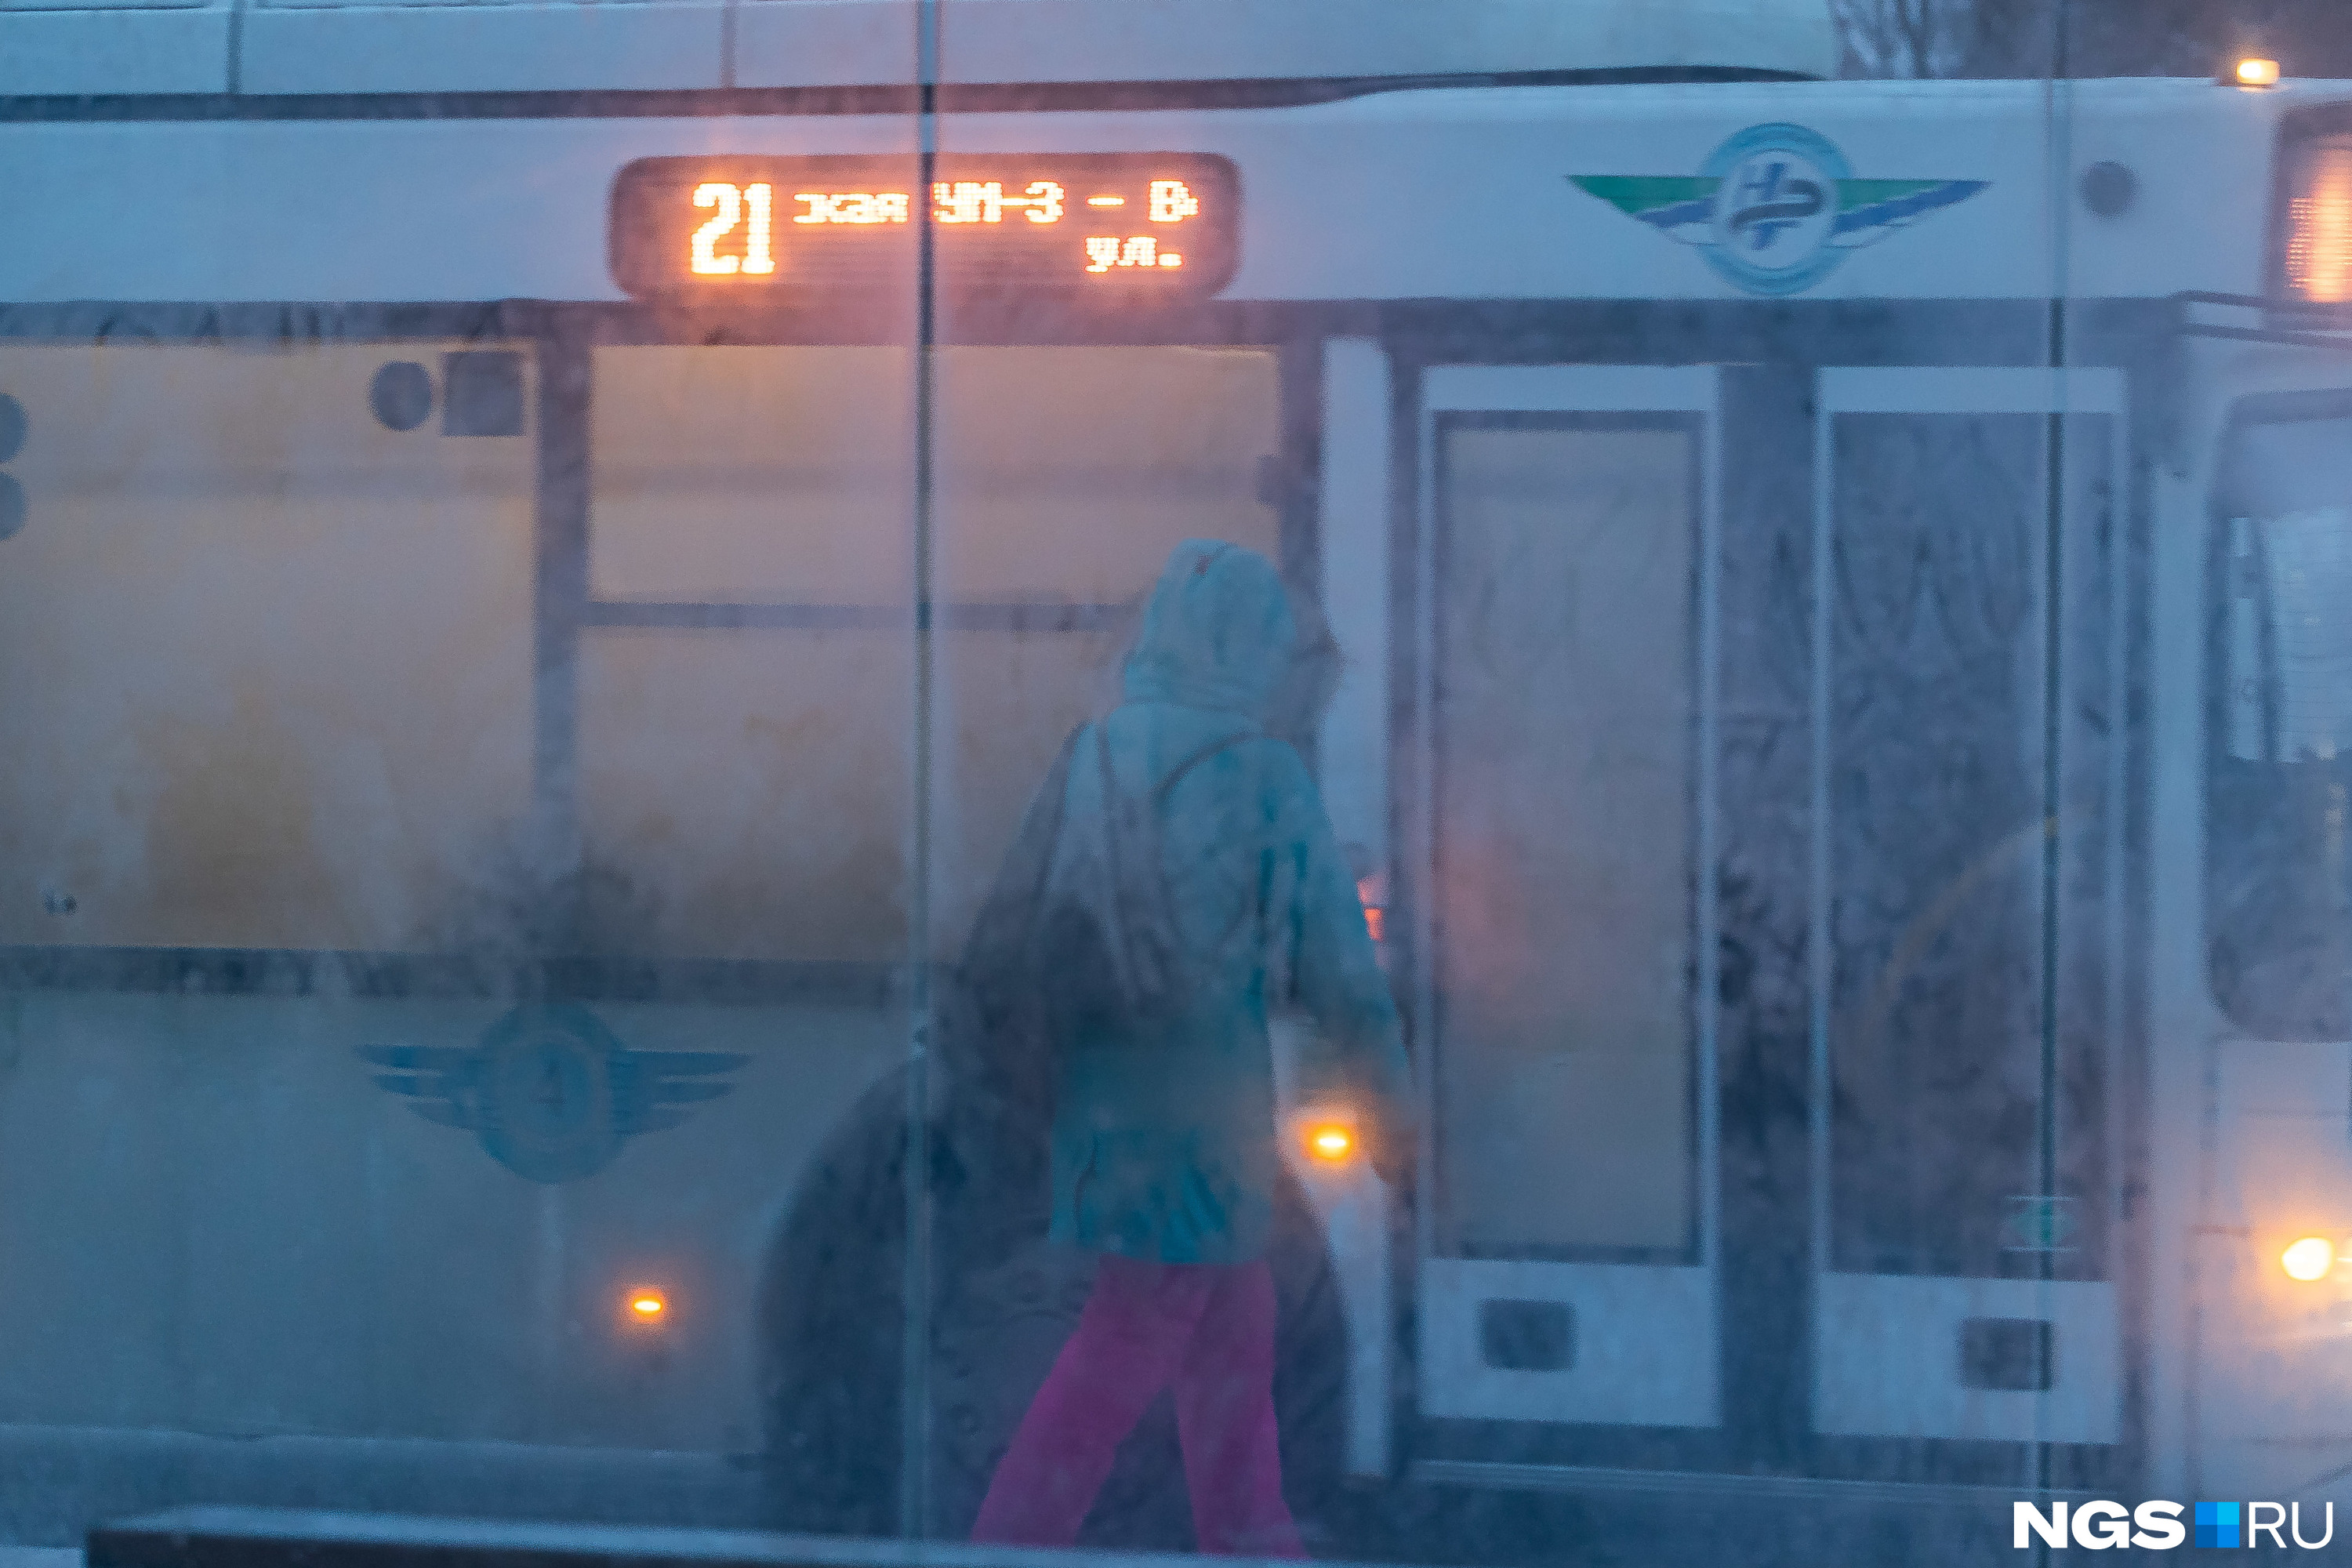 Общественный транспорт источником тепла не выглядит, особенно через заиндевелое стекло